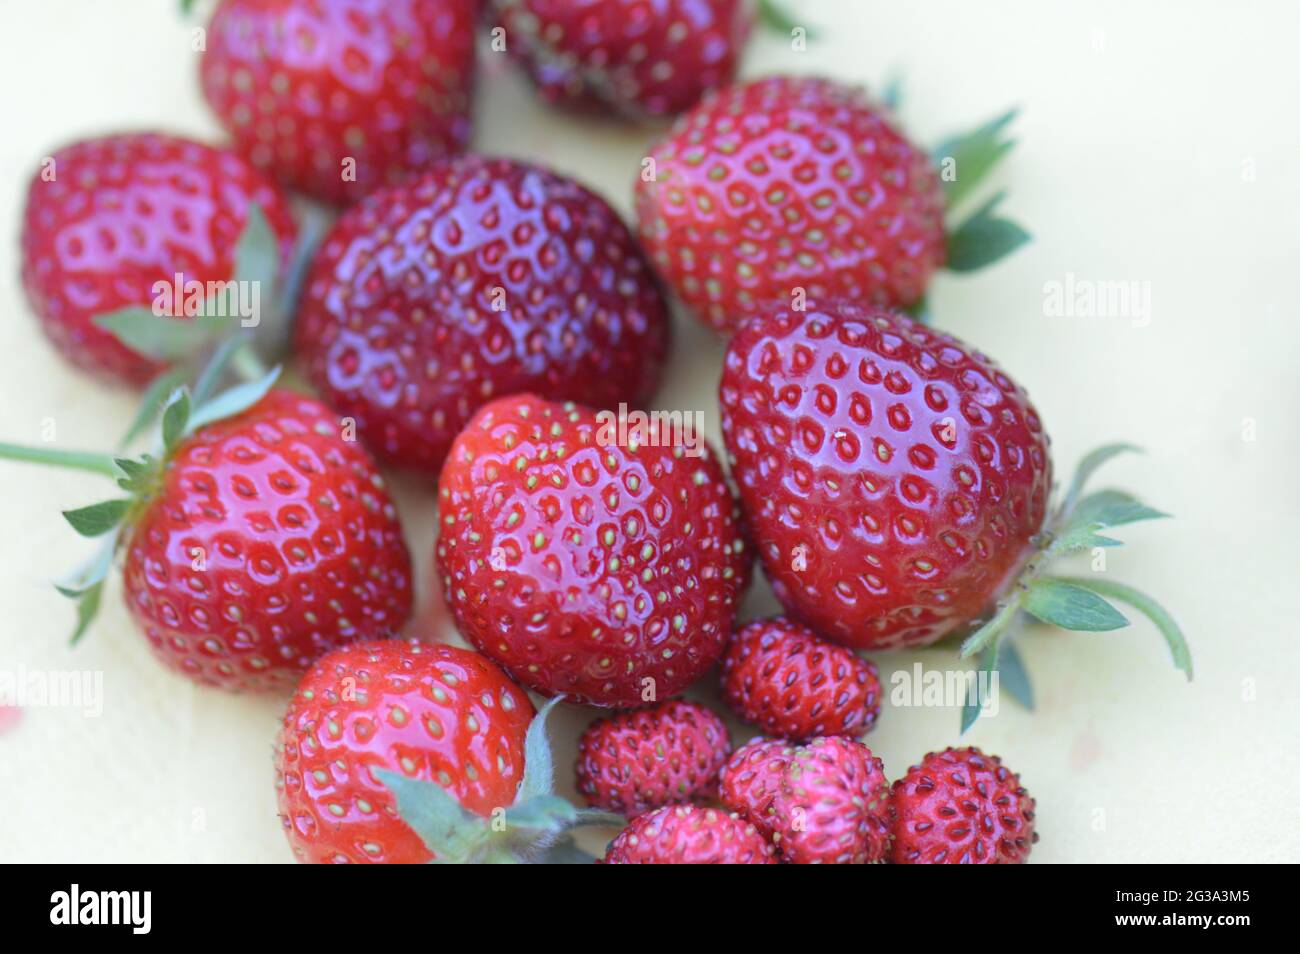 Erdbeere - verschiedene Sorten herrlicher roter frisch gepflückter Früchte aus dem eigenen Garten in Nahaufnahme auf gelber Serviette Stock Photo